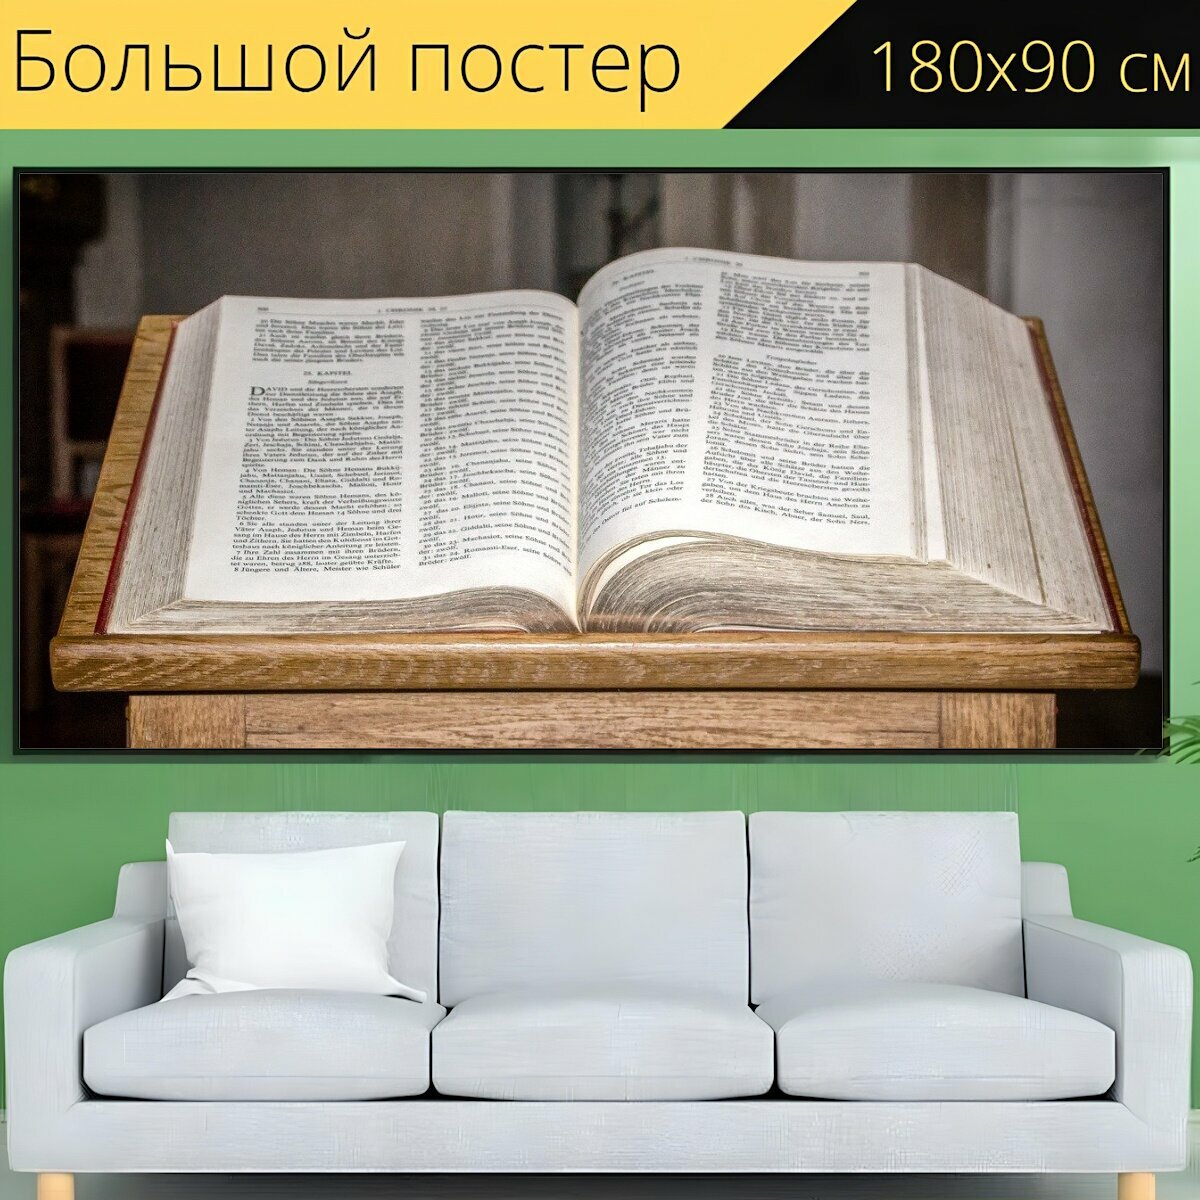 Большой постер "Книга, священное писание, библия" 180 x 90 см. для интерьера